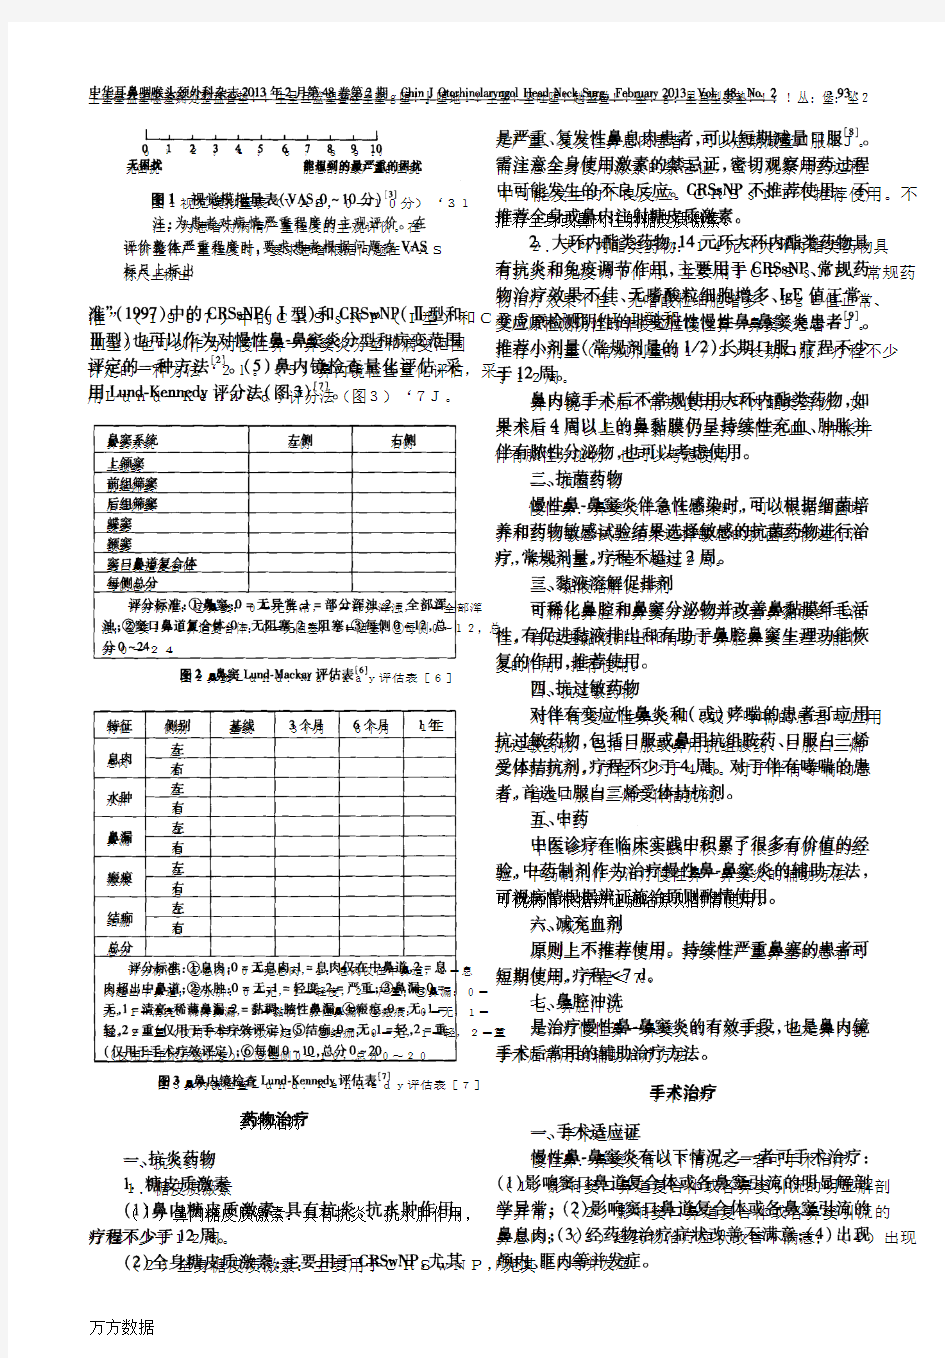 中国慢性鼻-鼻窦炎诊断和治疗指南2012年(昆明)